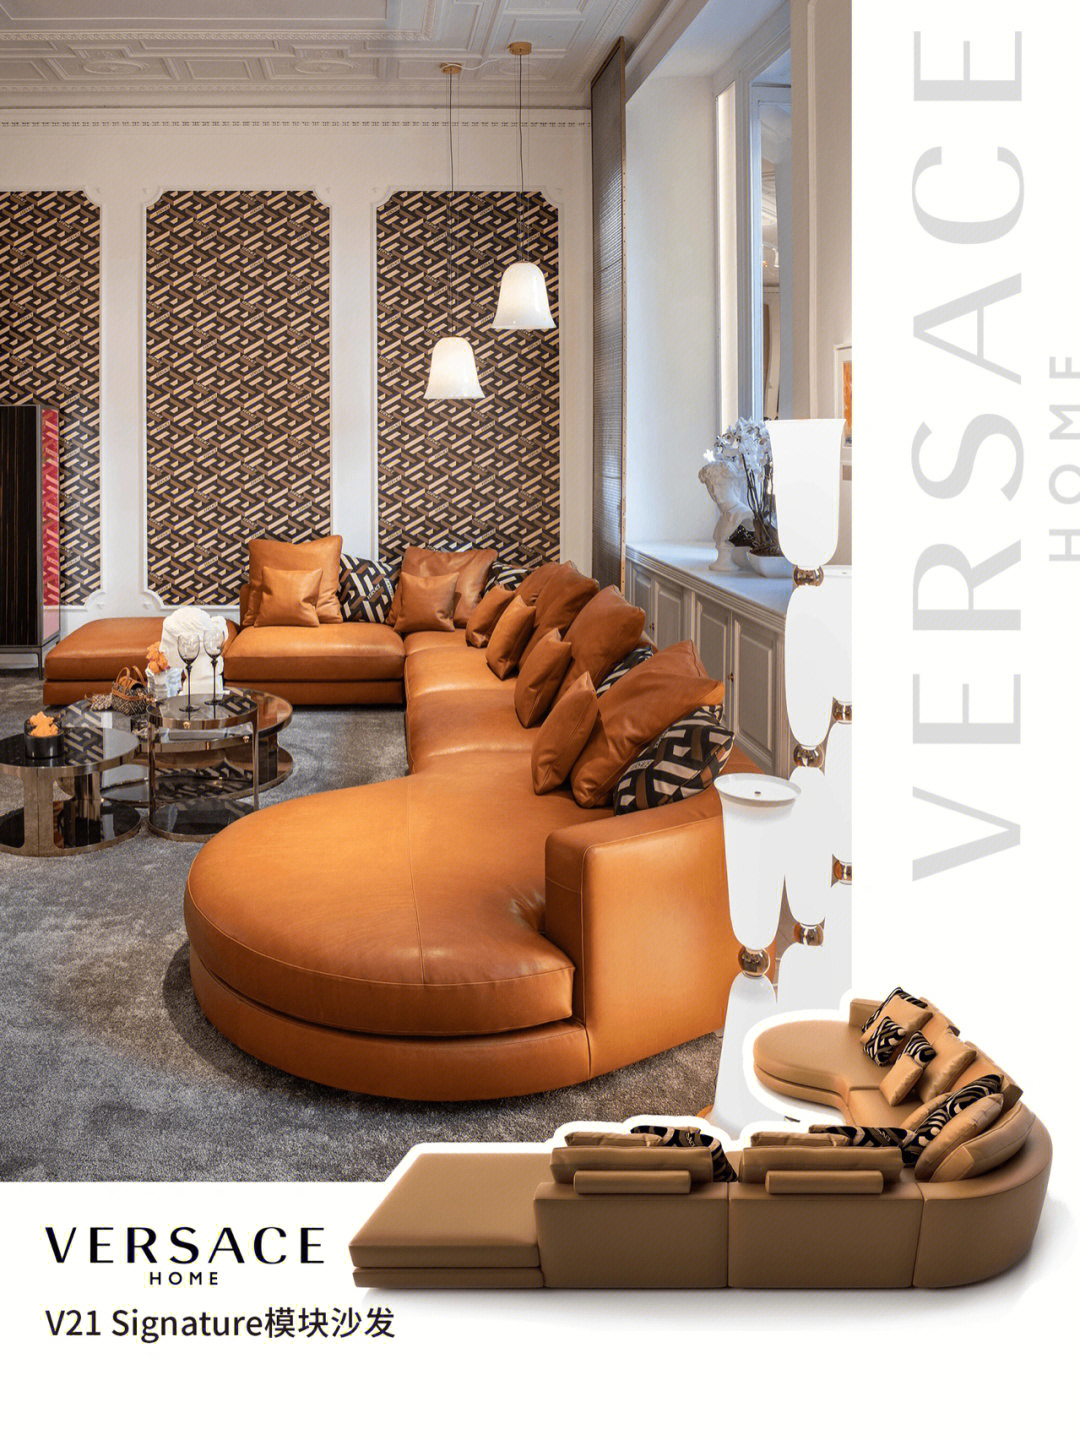 品牌:versace home名称:v21 signature 模块沙发这张沙发是范思哲的第